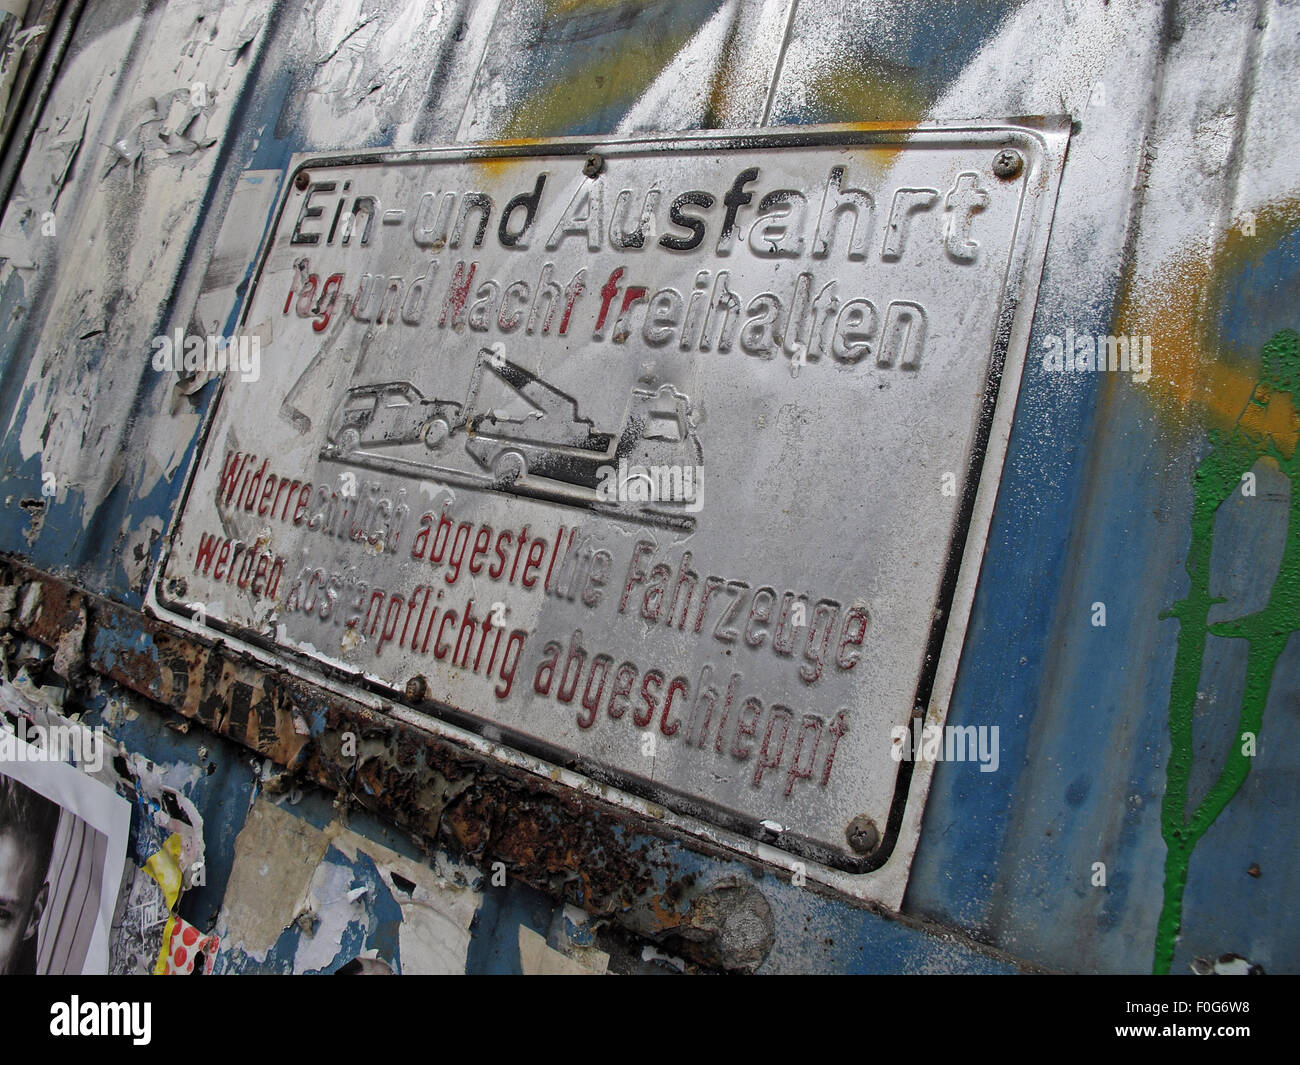 Berlin Mitte,Street art on walls,Germany Ein-und Ausfahrt sign sprayed with graffiti Stock Photo